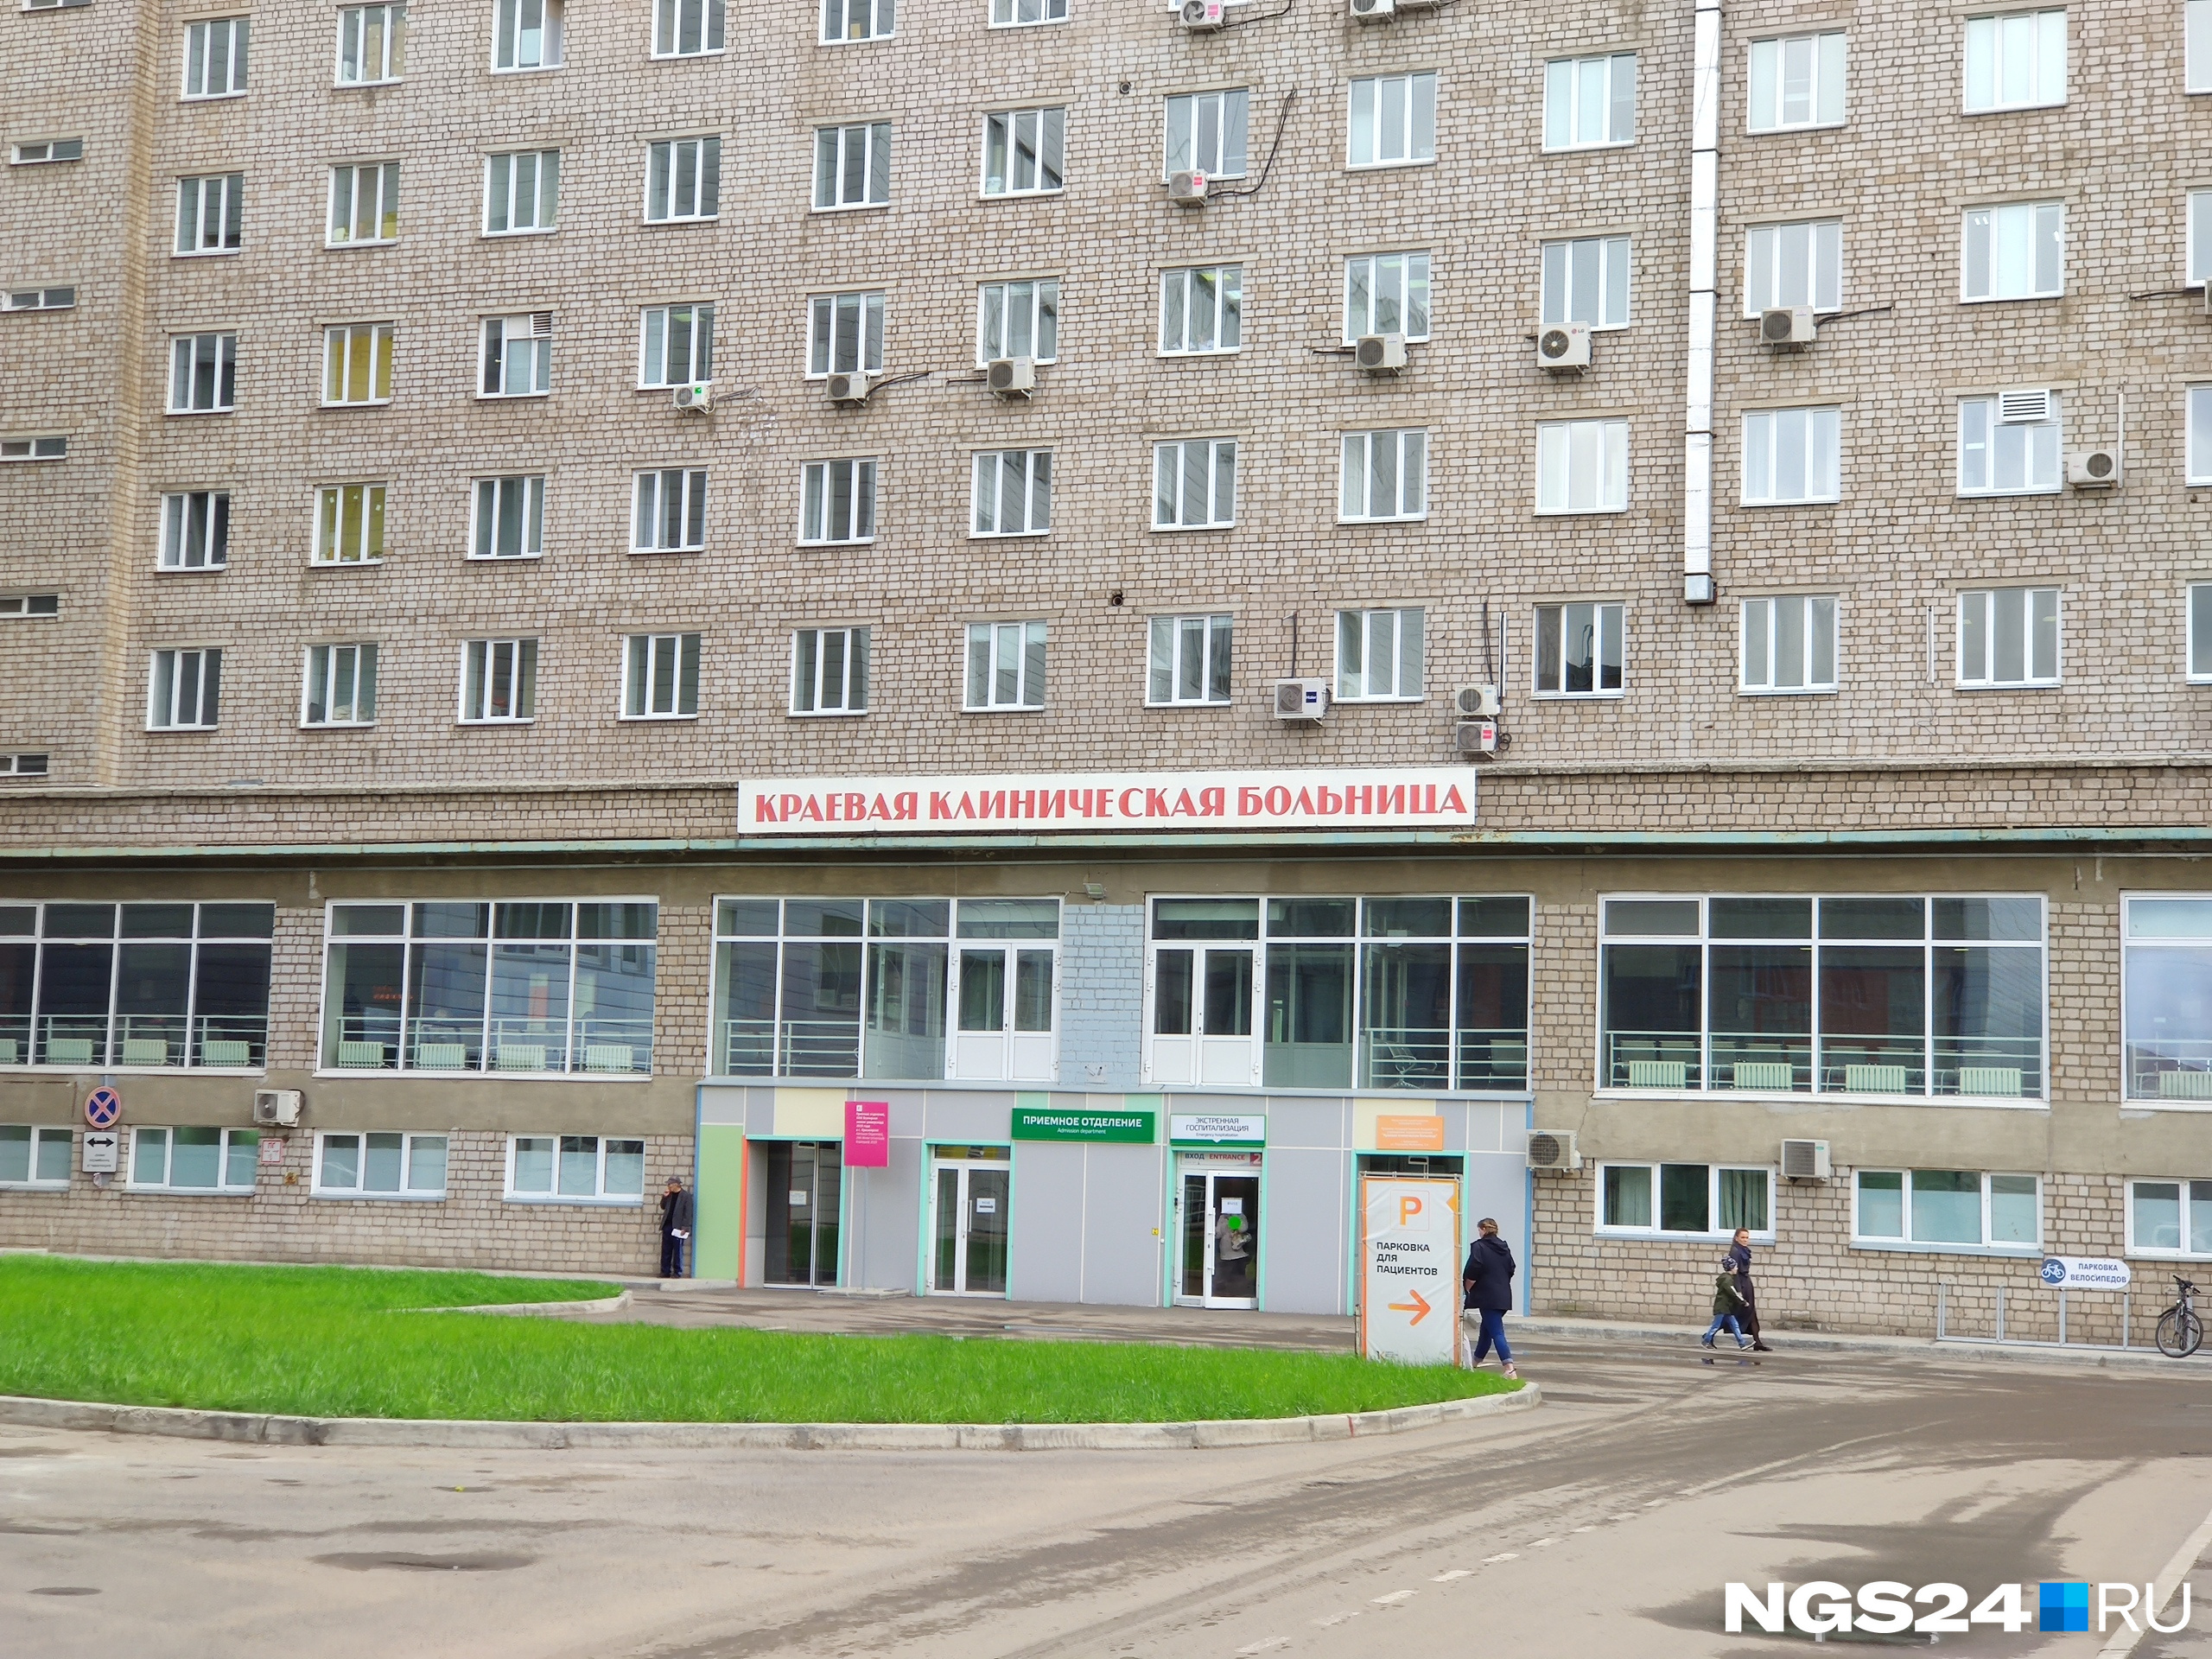 Красноярское государственное бюджетное учреждение здравоохранения